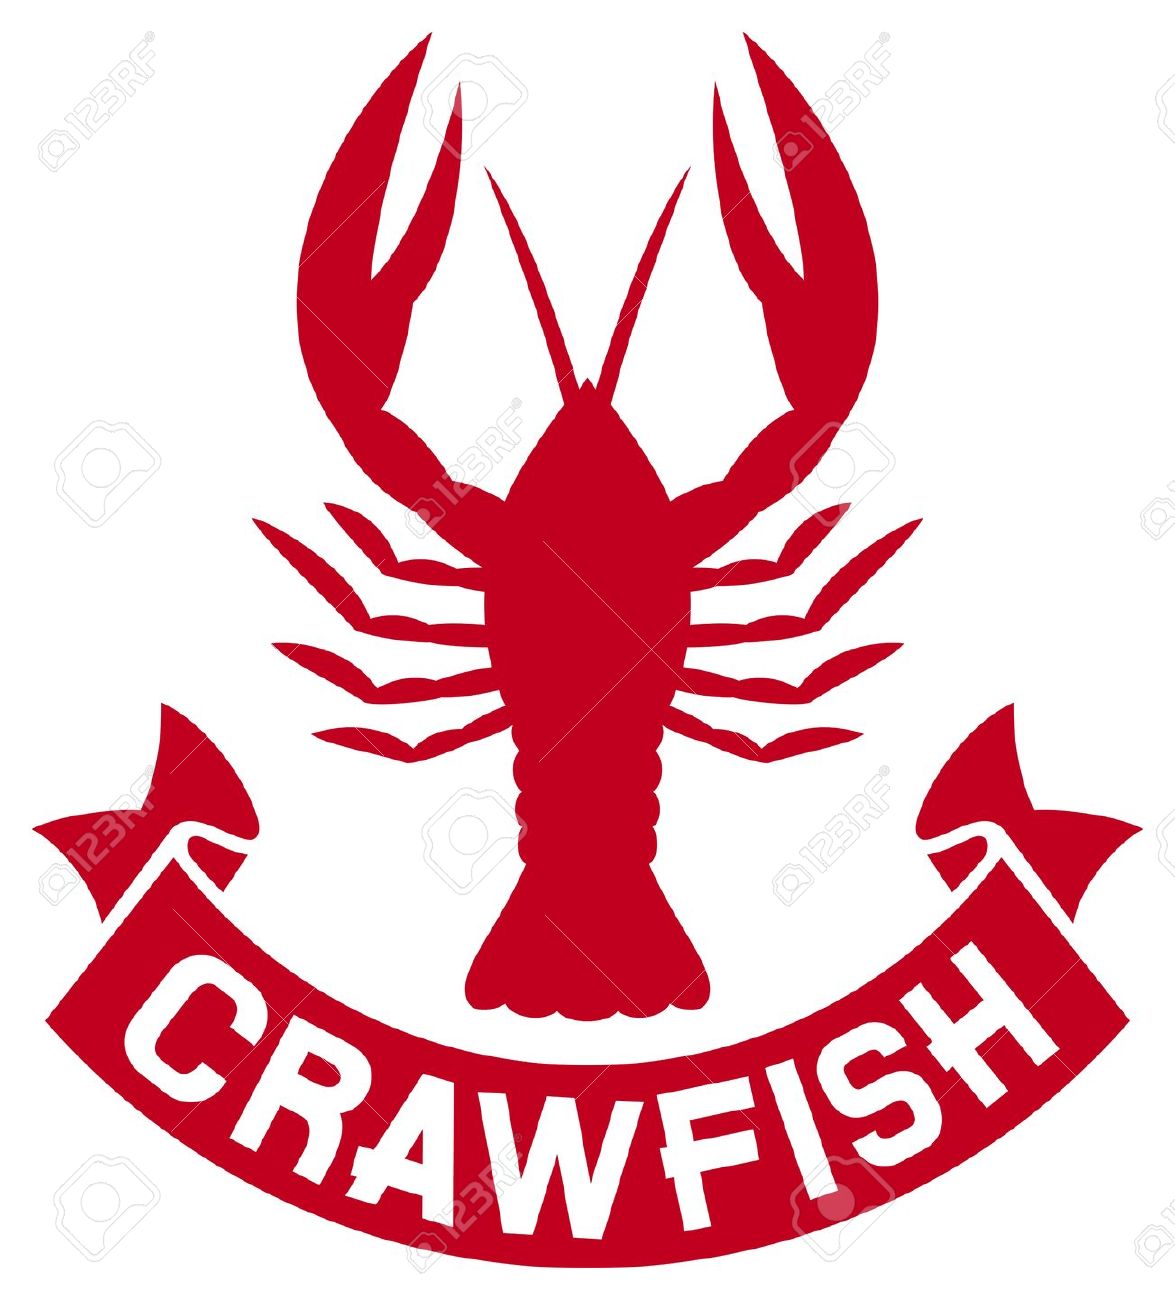 crawfish: crawfish label .